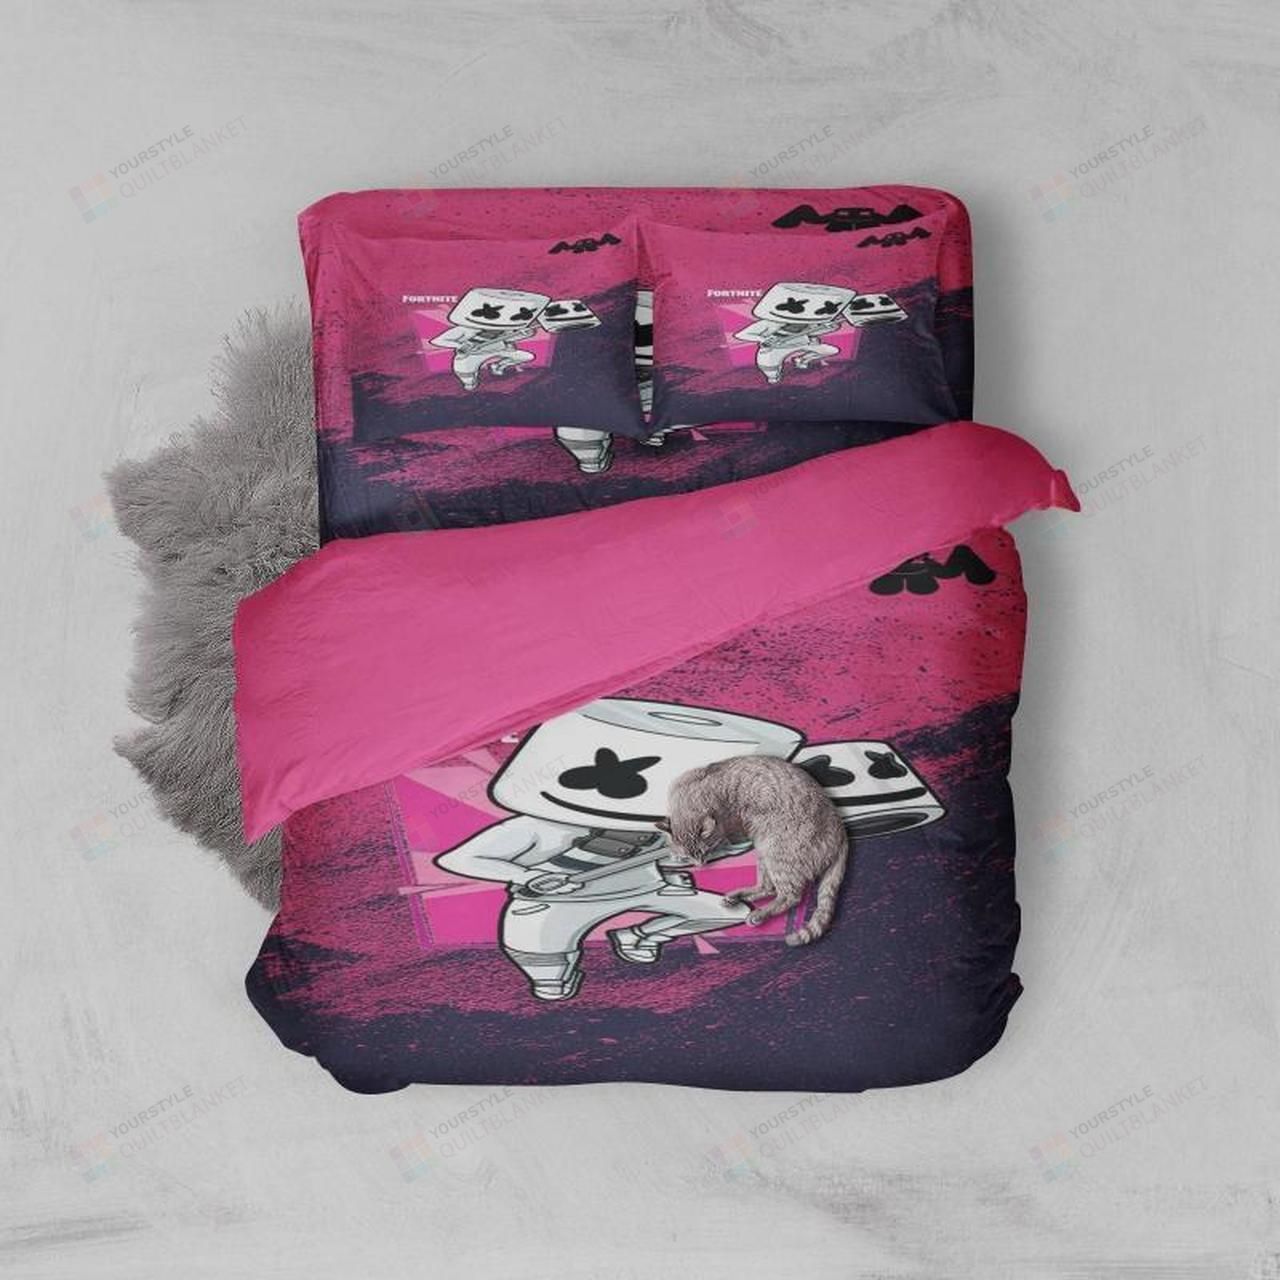 Marshmello Fortnite Bedding Set (Duvet Cover & Pillow Cases)